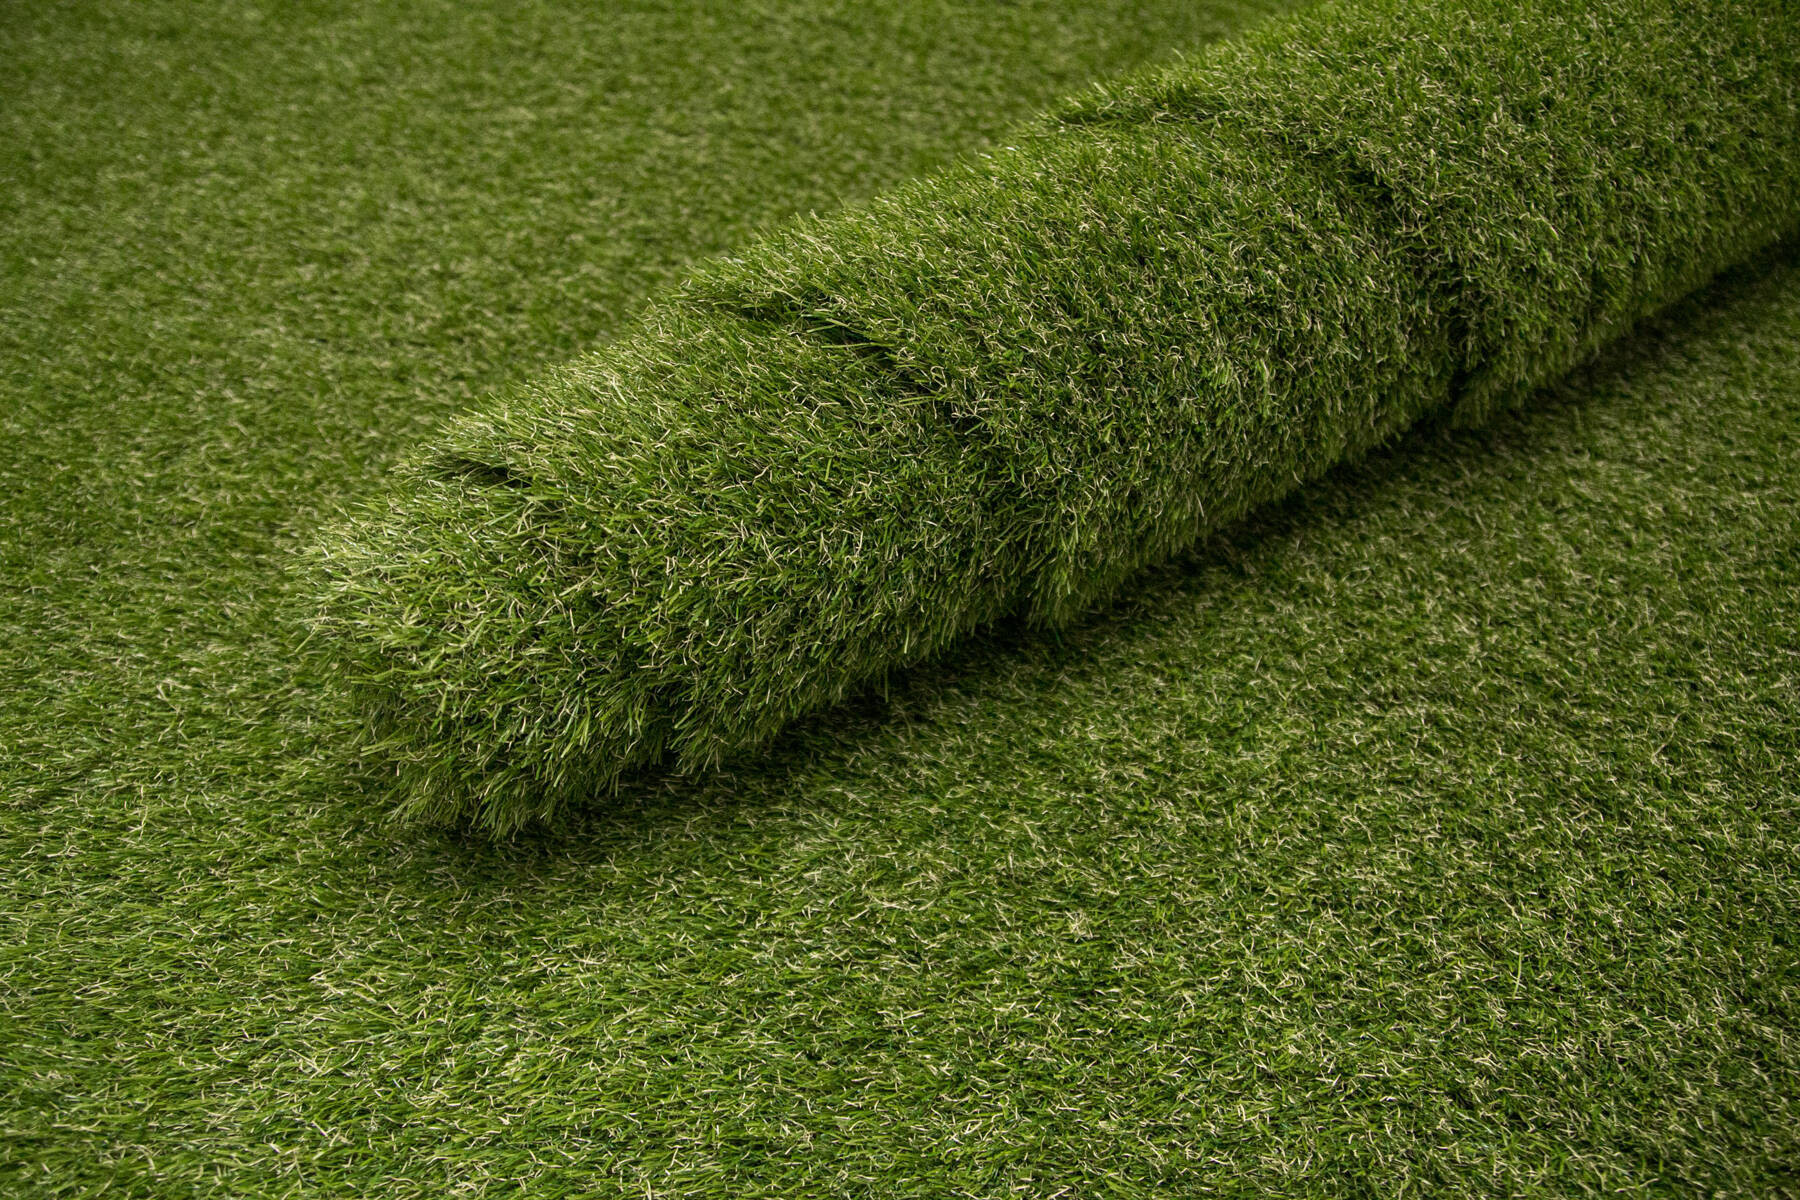 Umelá tráva Imperial 3318 zelená